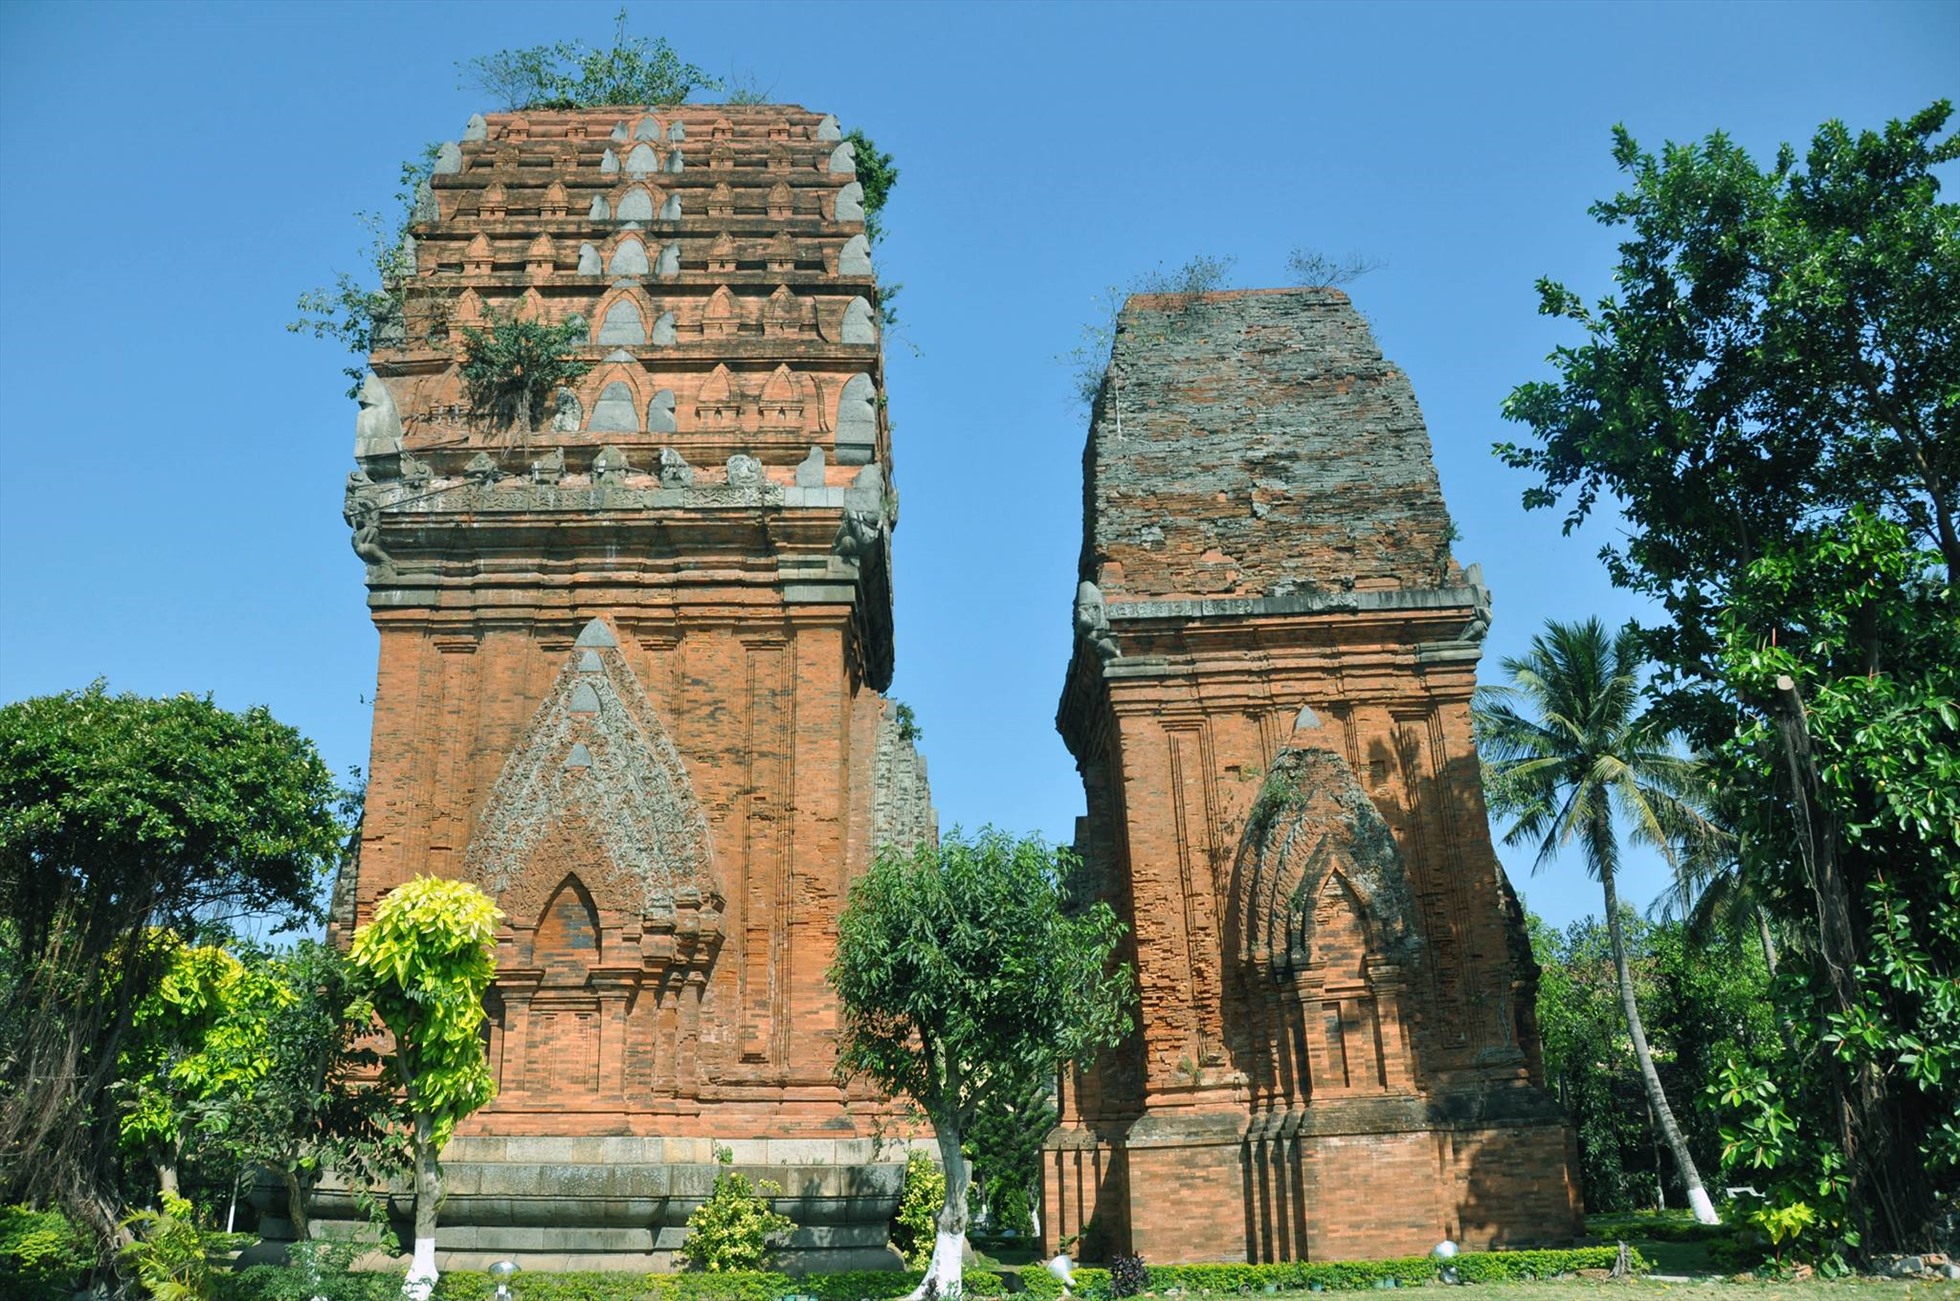 Tháp Đôi (Quy Nhơn - Bình Định) - nơi thu hút khách du lịch đến thưởng ngoạn. Ảnh: Nguyễn Thiện Nhân